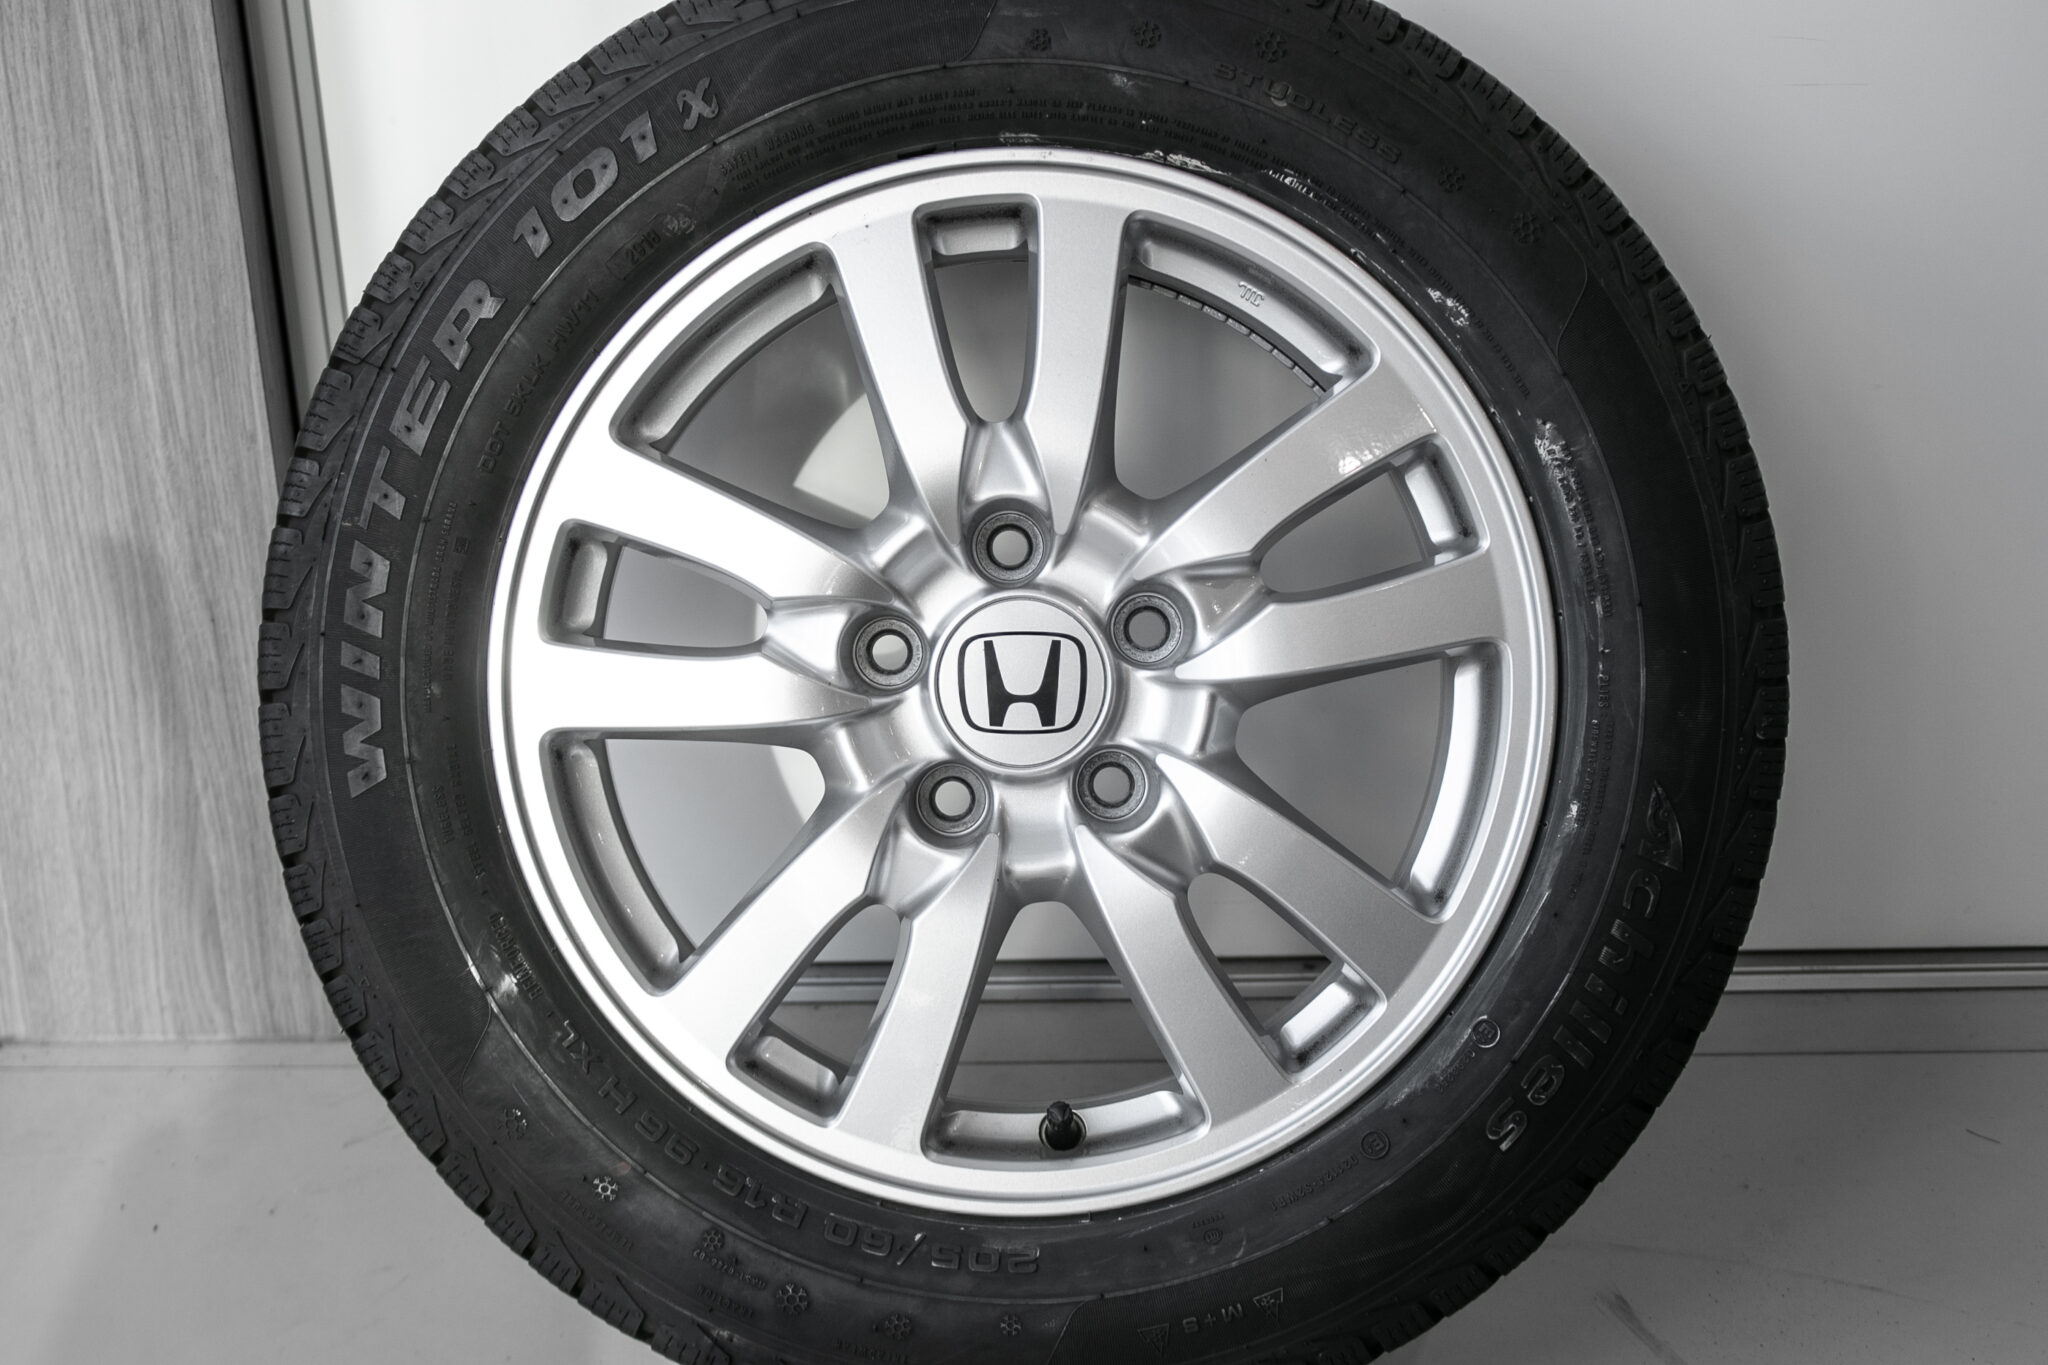 16″ Winterwielen voor de Honda Accord vanaf 2009
€350,-
Gebruikt. Profieldiepte: 7.5mm